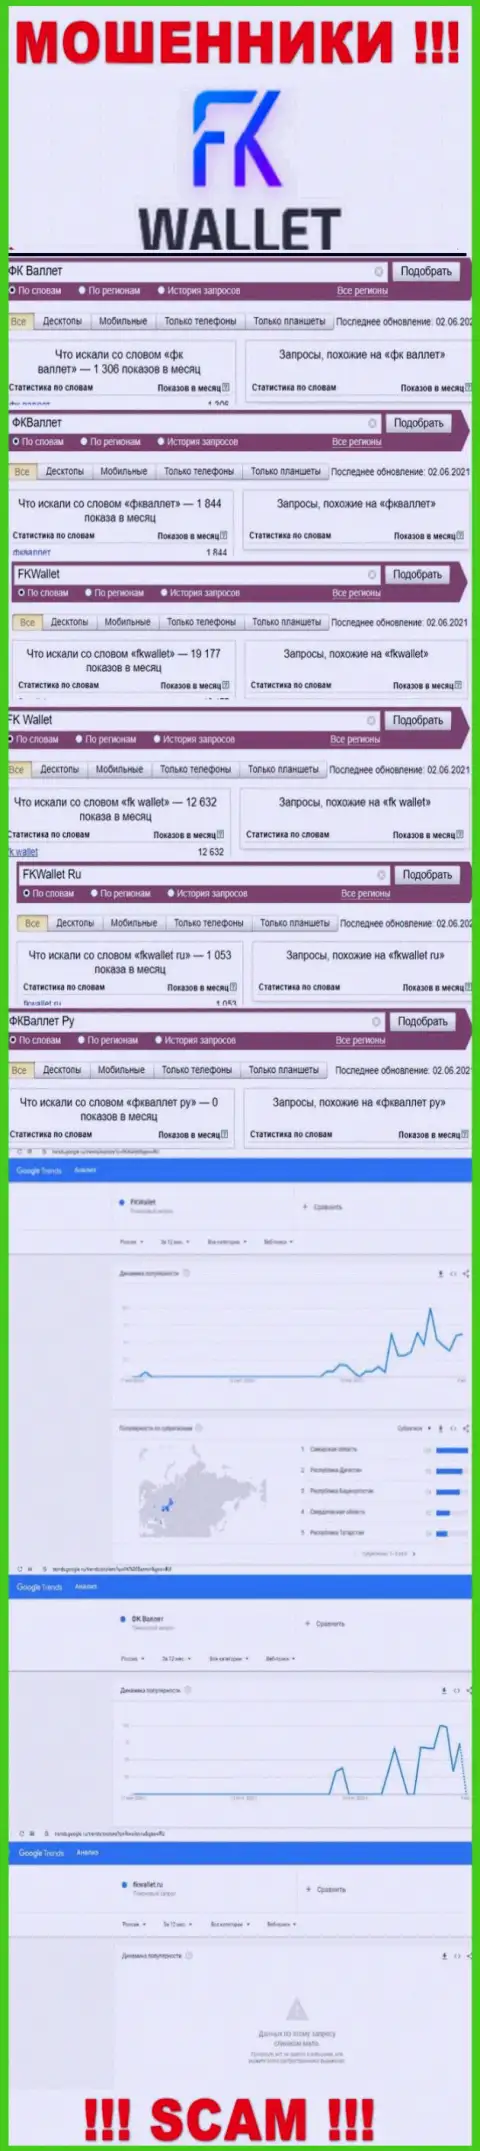 Скрин результатов онлайн запросов по жульнической компании ФК Валлет